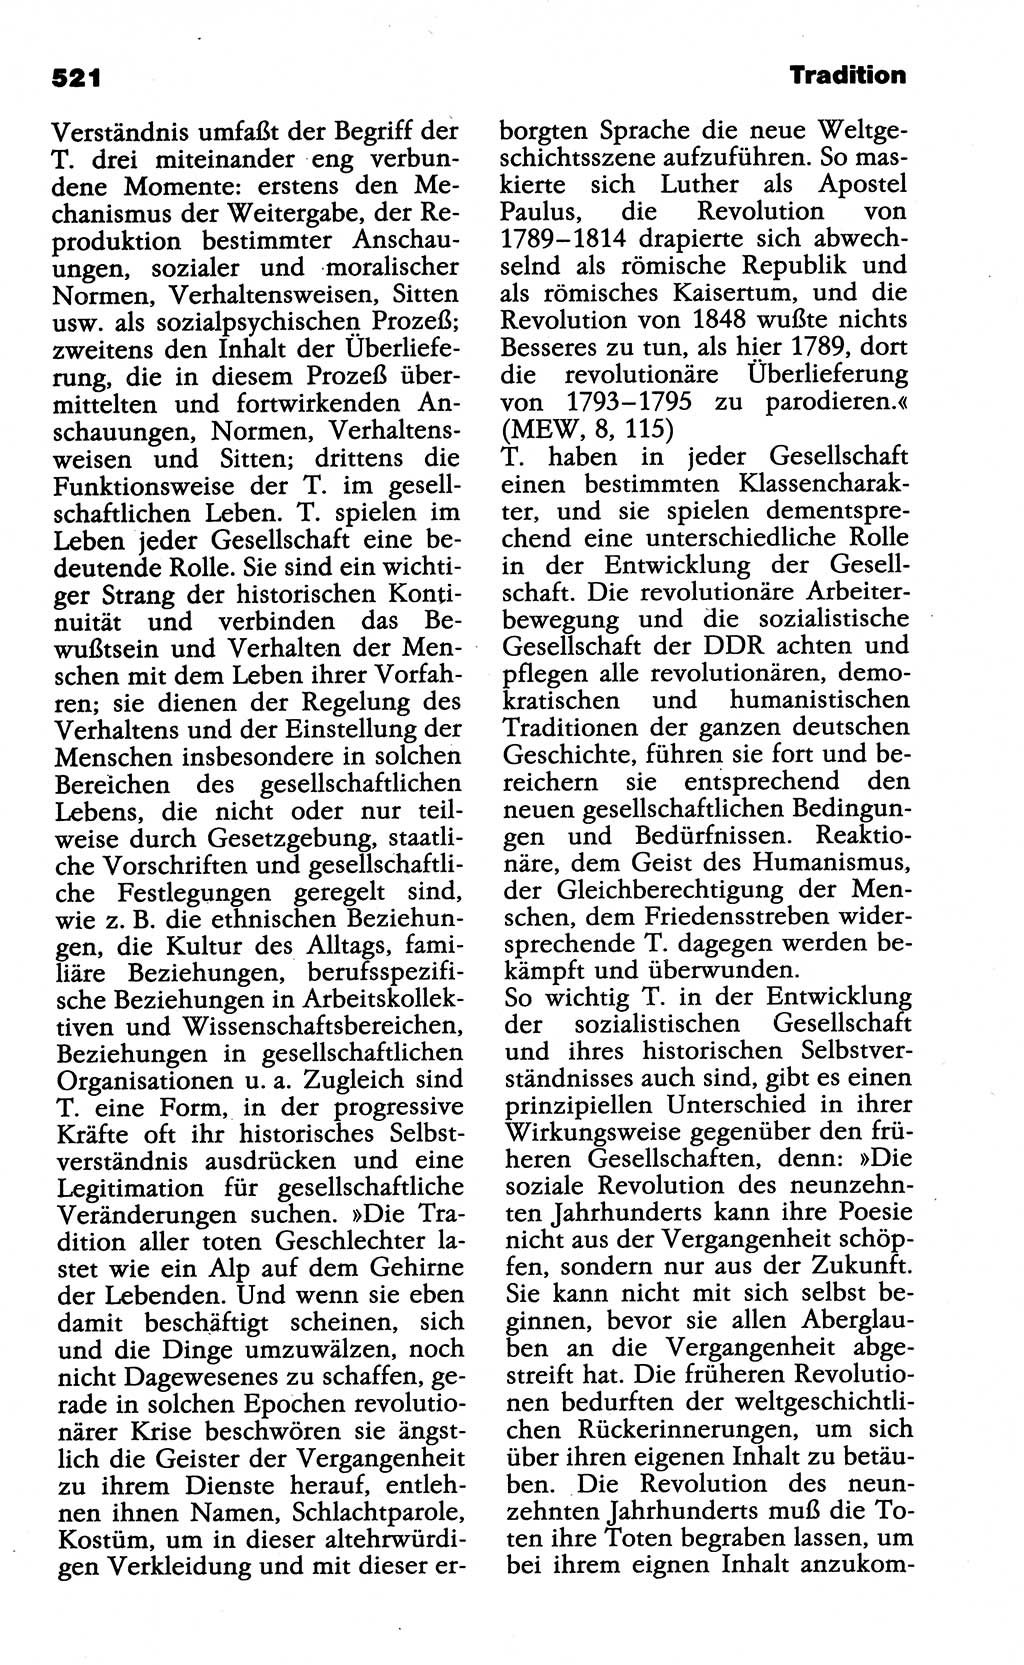 Wörterbuch der marxistisch-leninistischen Philosophie [Deutsche Demokratische Republik (DDR)] 1985, Seite 521 (Wb. ML Phil. DDR 1985, S. 521)